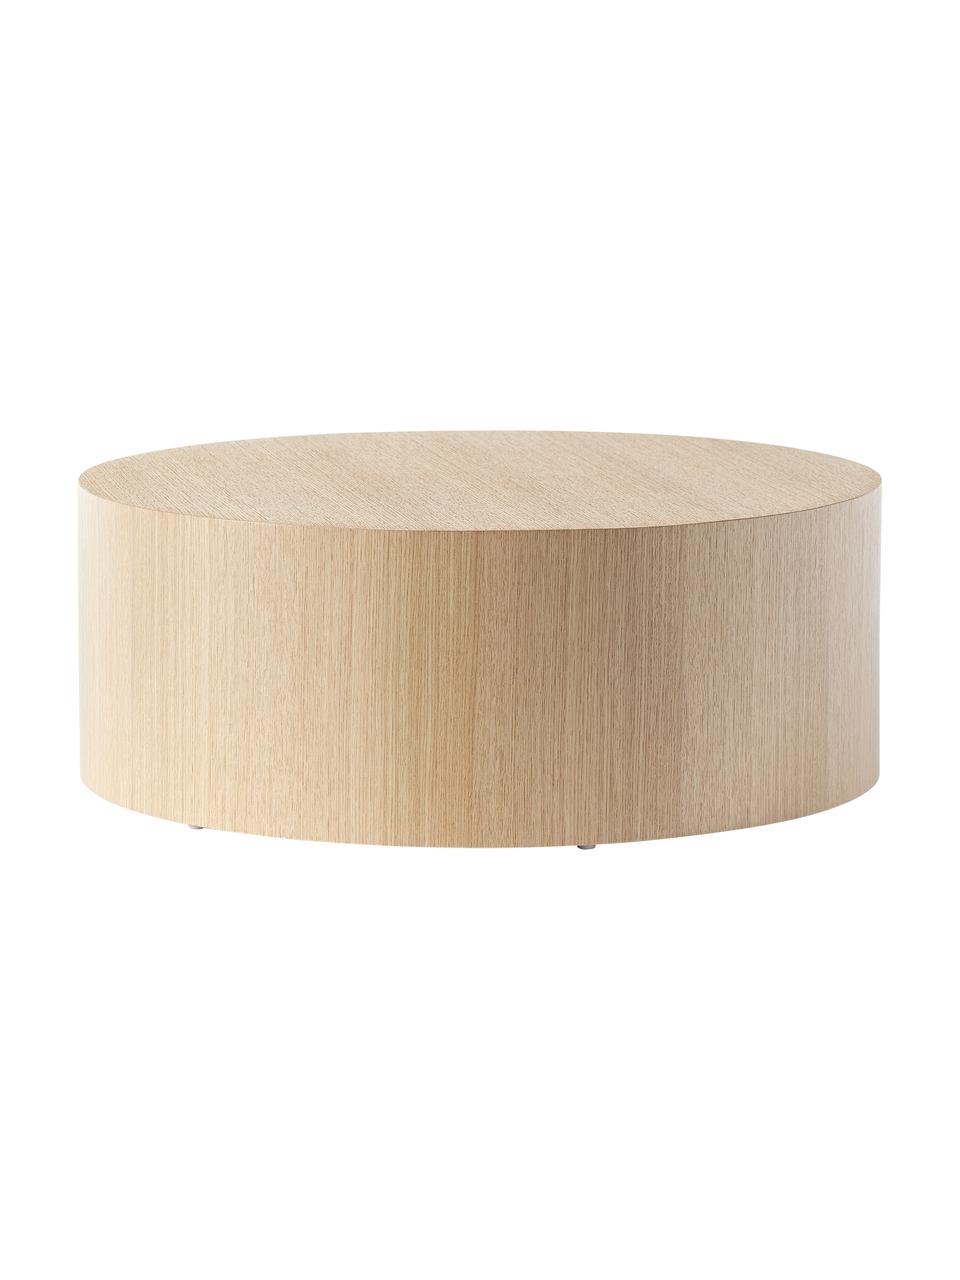 Tavolino rotondo da salotto in legno Dan, Pannello di fibra a media densità (MDF) con finitura in legno di quercia, Legno chiaro, Ø 80 x Alt. 30 cm